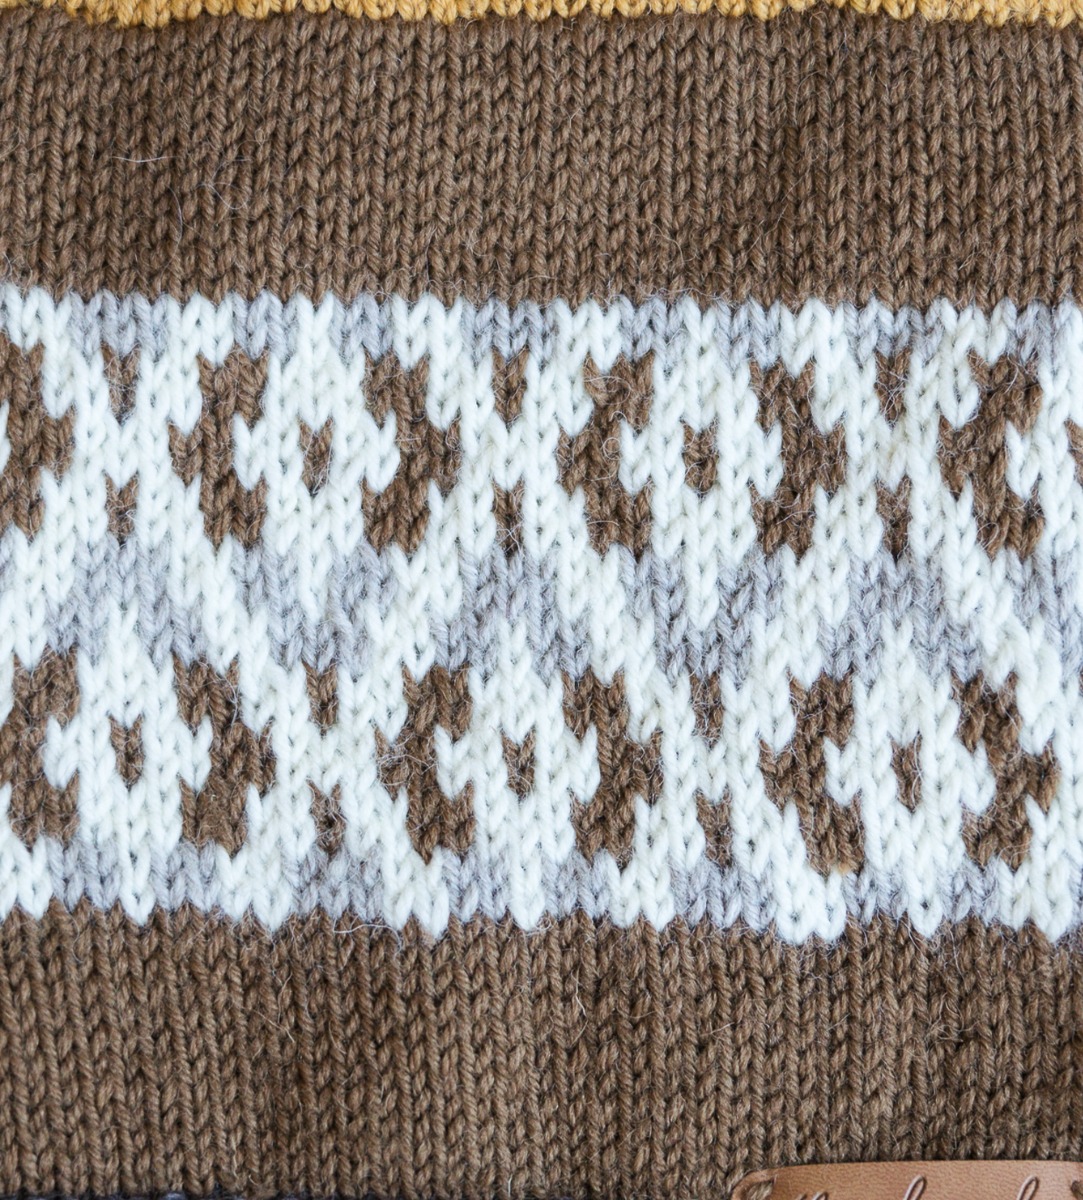 Osa11_knits